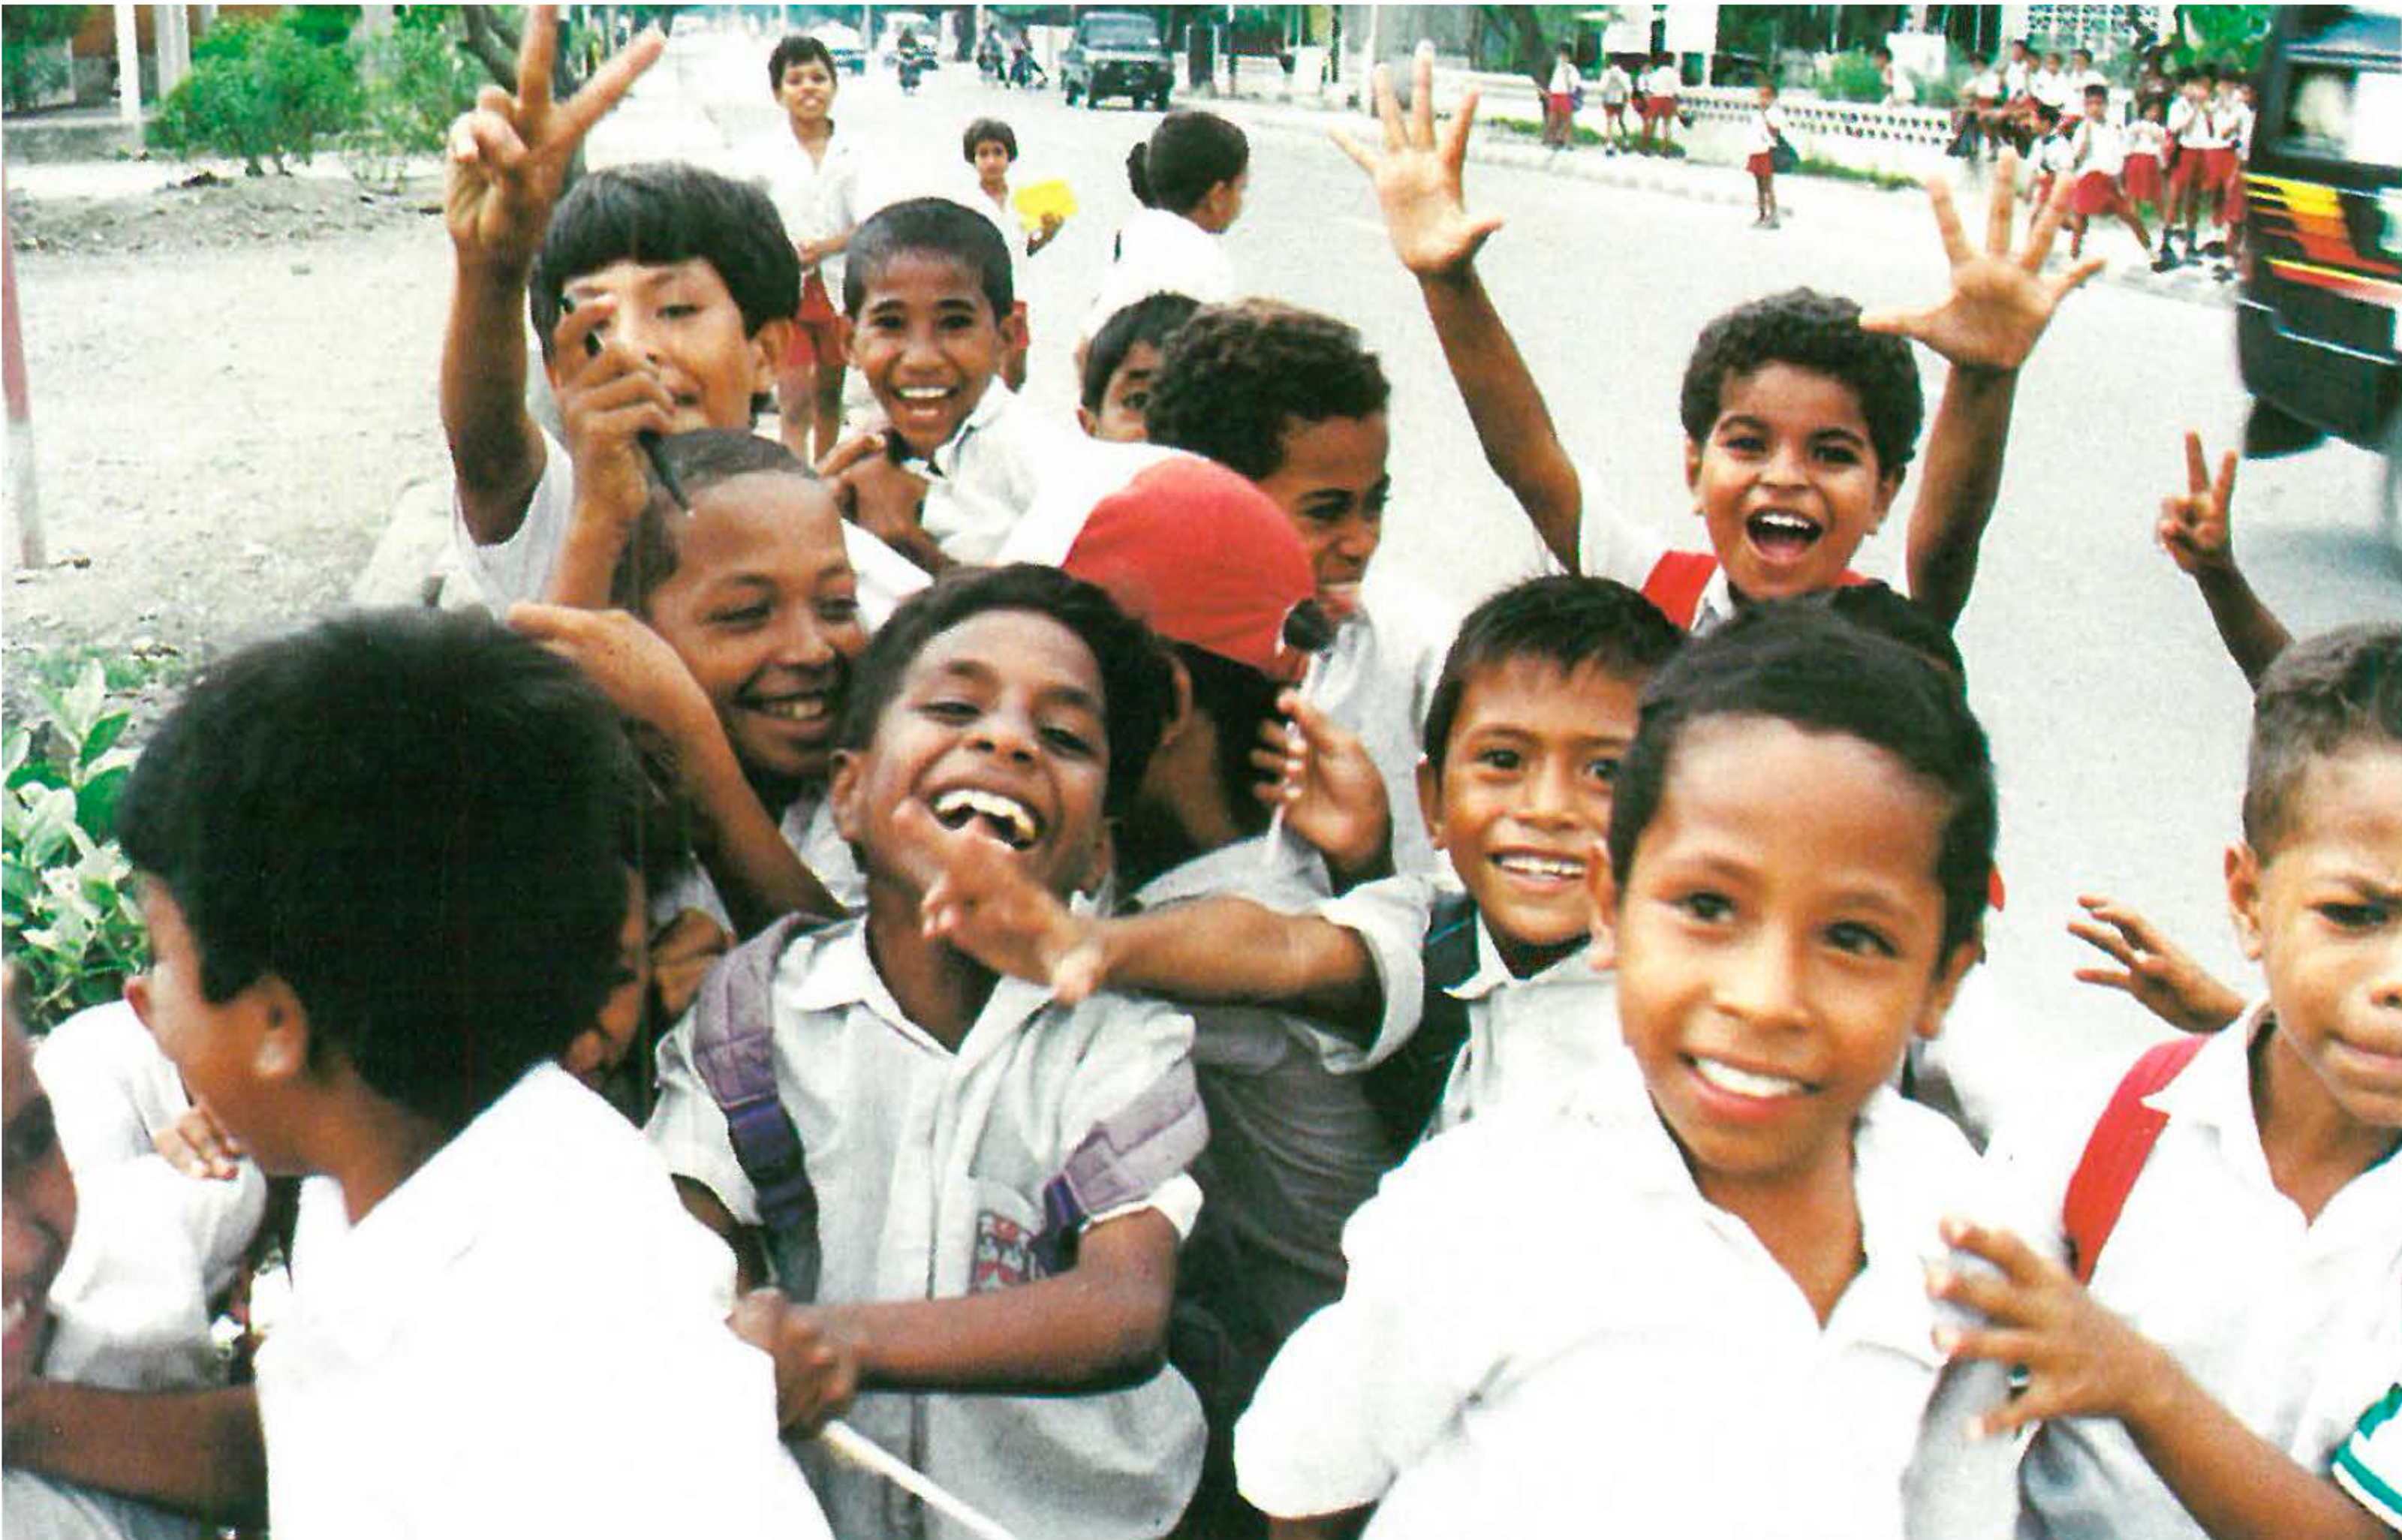 A crowd of children spontaneously break into a gleeful chant: “Viva Timor Leste! Viva Timor Leste!” (Wilson da Silva)